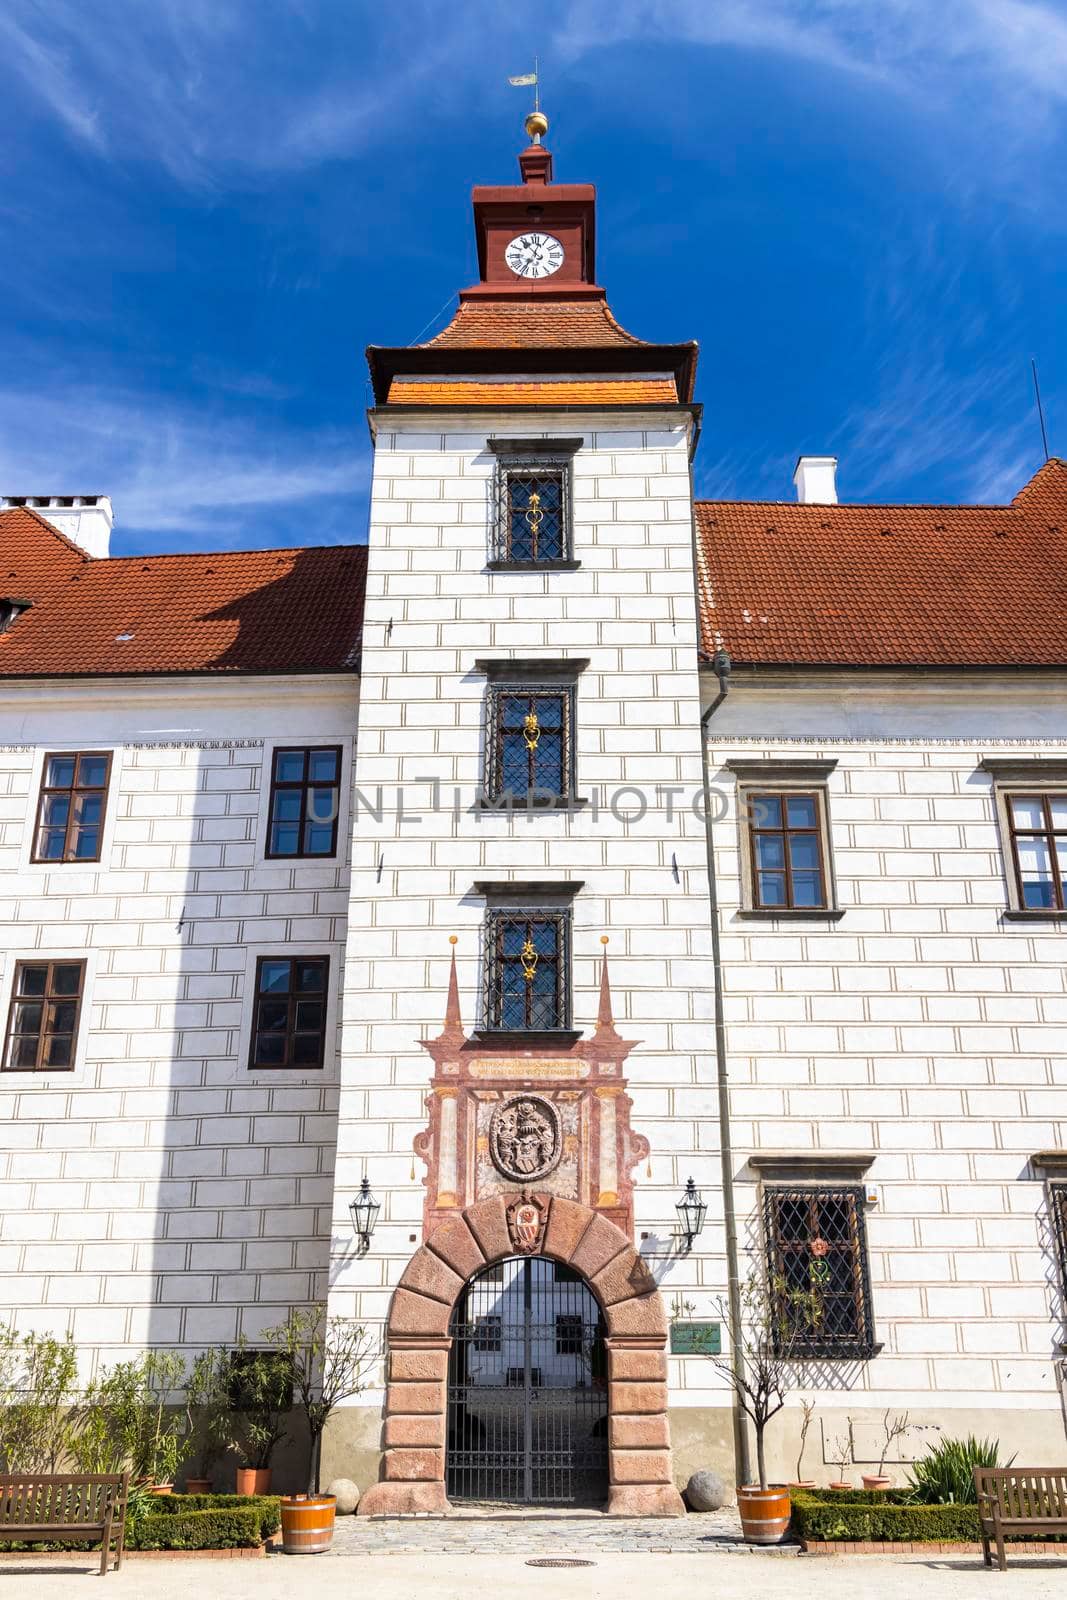 Trebon castle and town, Southern Bohemia, Czech Republic by phbcz